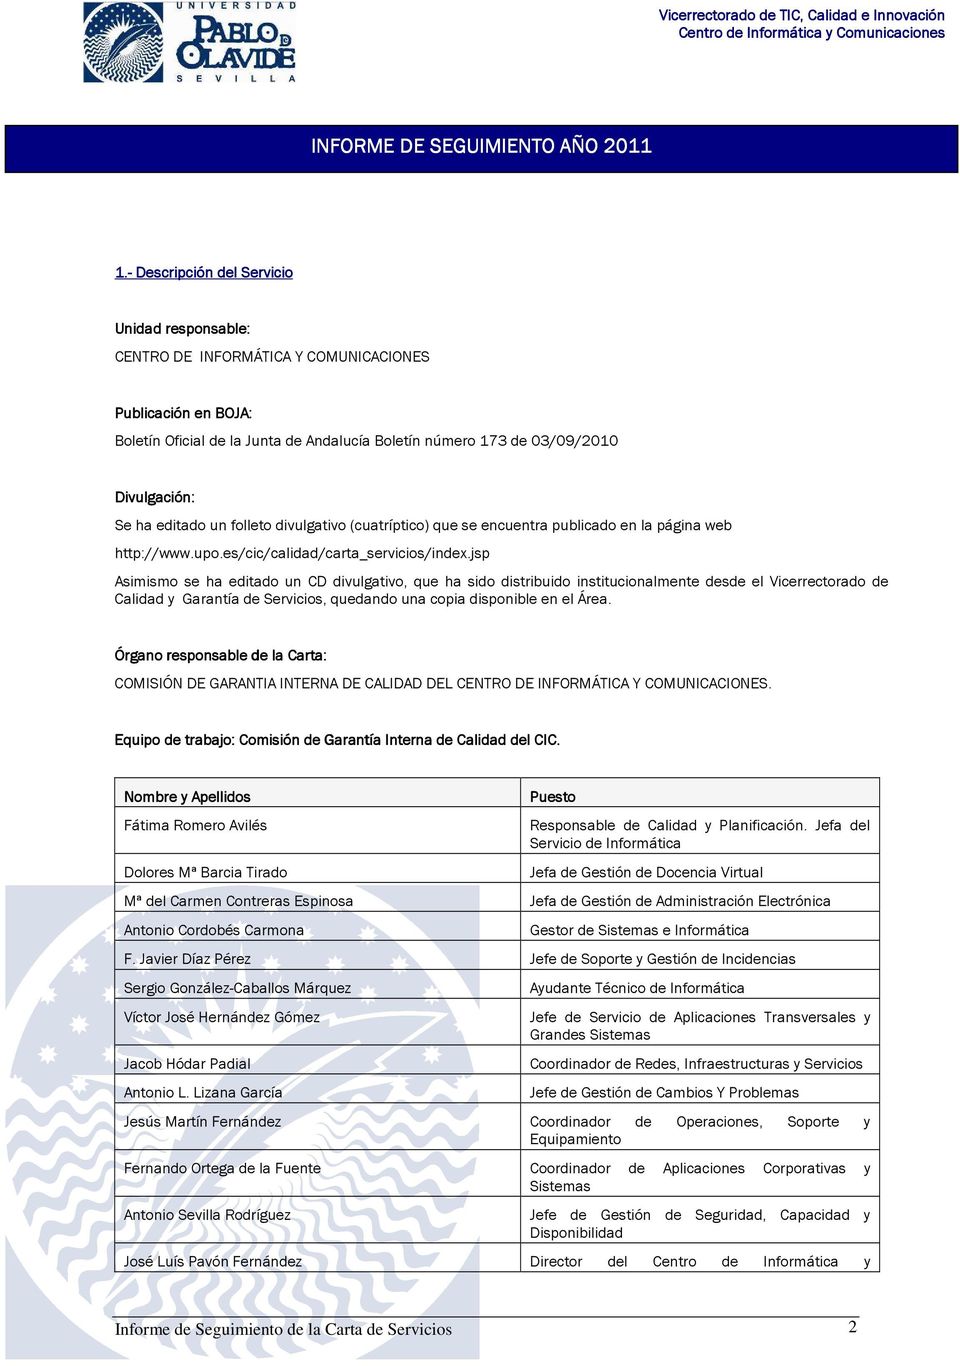 editado un folleto divulgativo (cuatríptico) que se encuentra publicado en la página web http://www.upo.es/cic/calidad/carta_servicios/index.